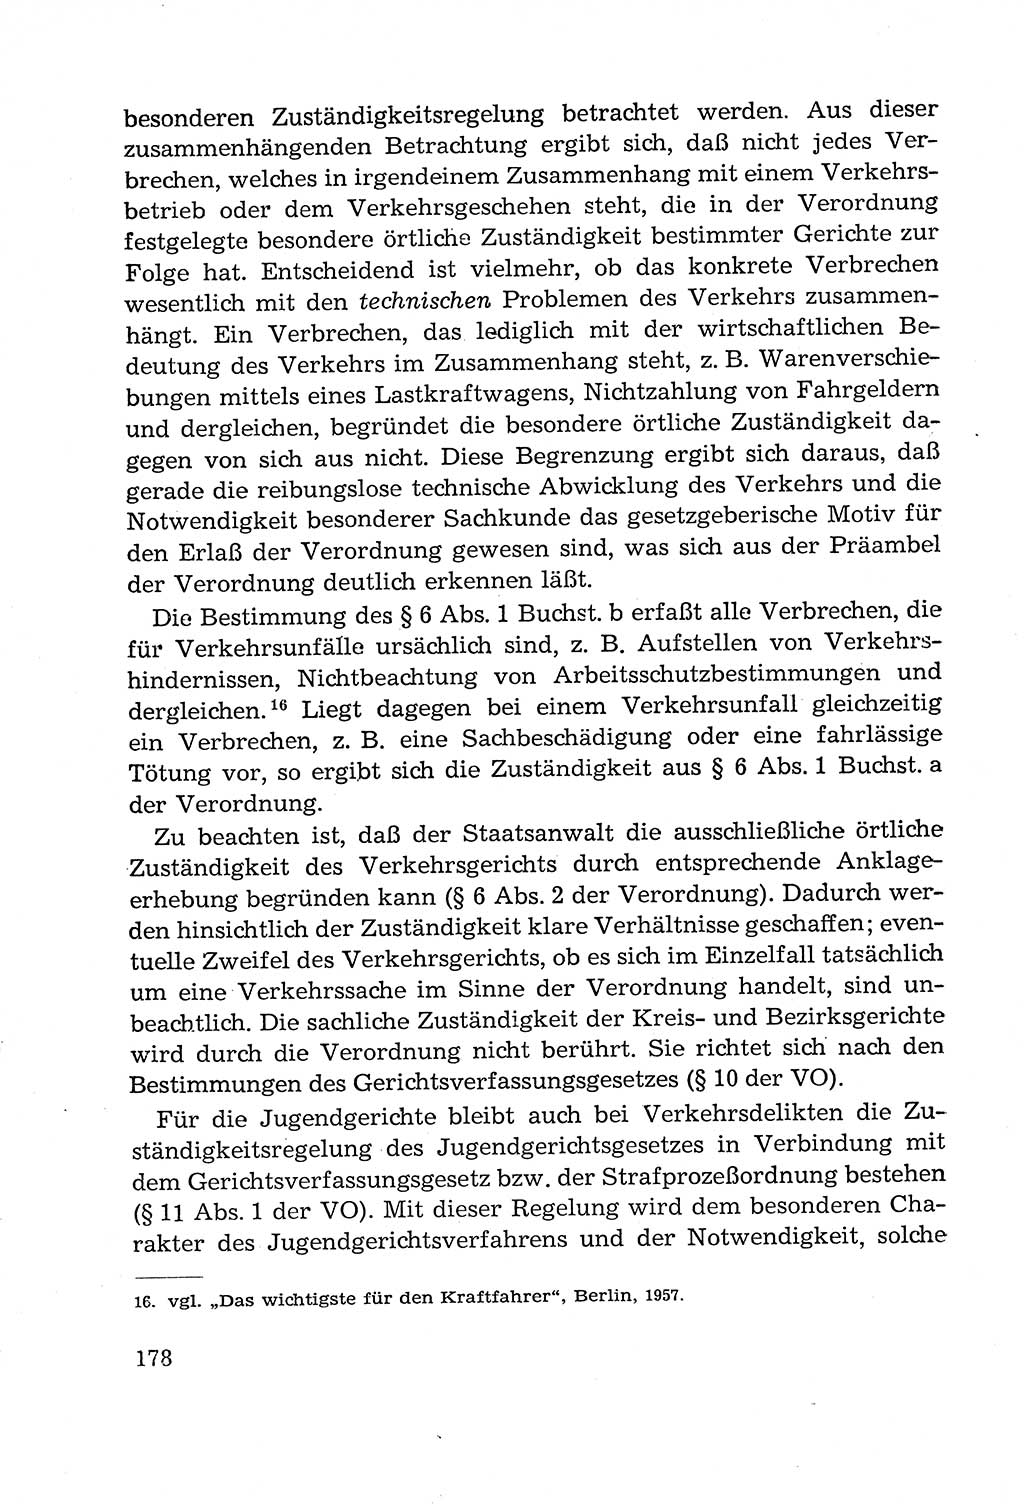 Leitfaden des Strafprozeßrechts der Deutschen Demokratischen Republik (DDR) 1959, Seite 178 (LF StPR DDR 1959, S. 178)